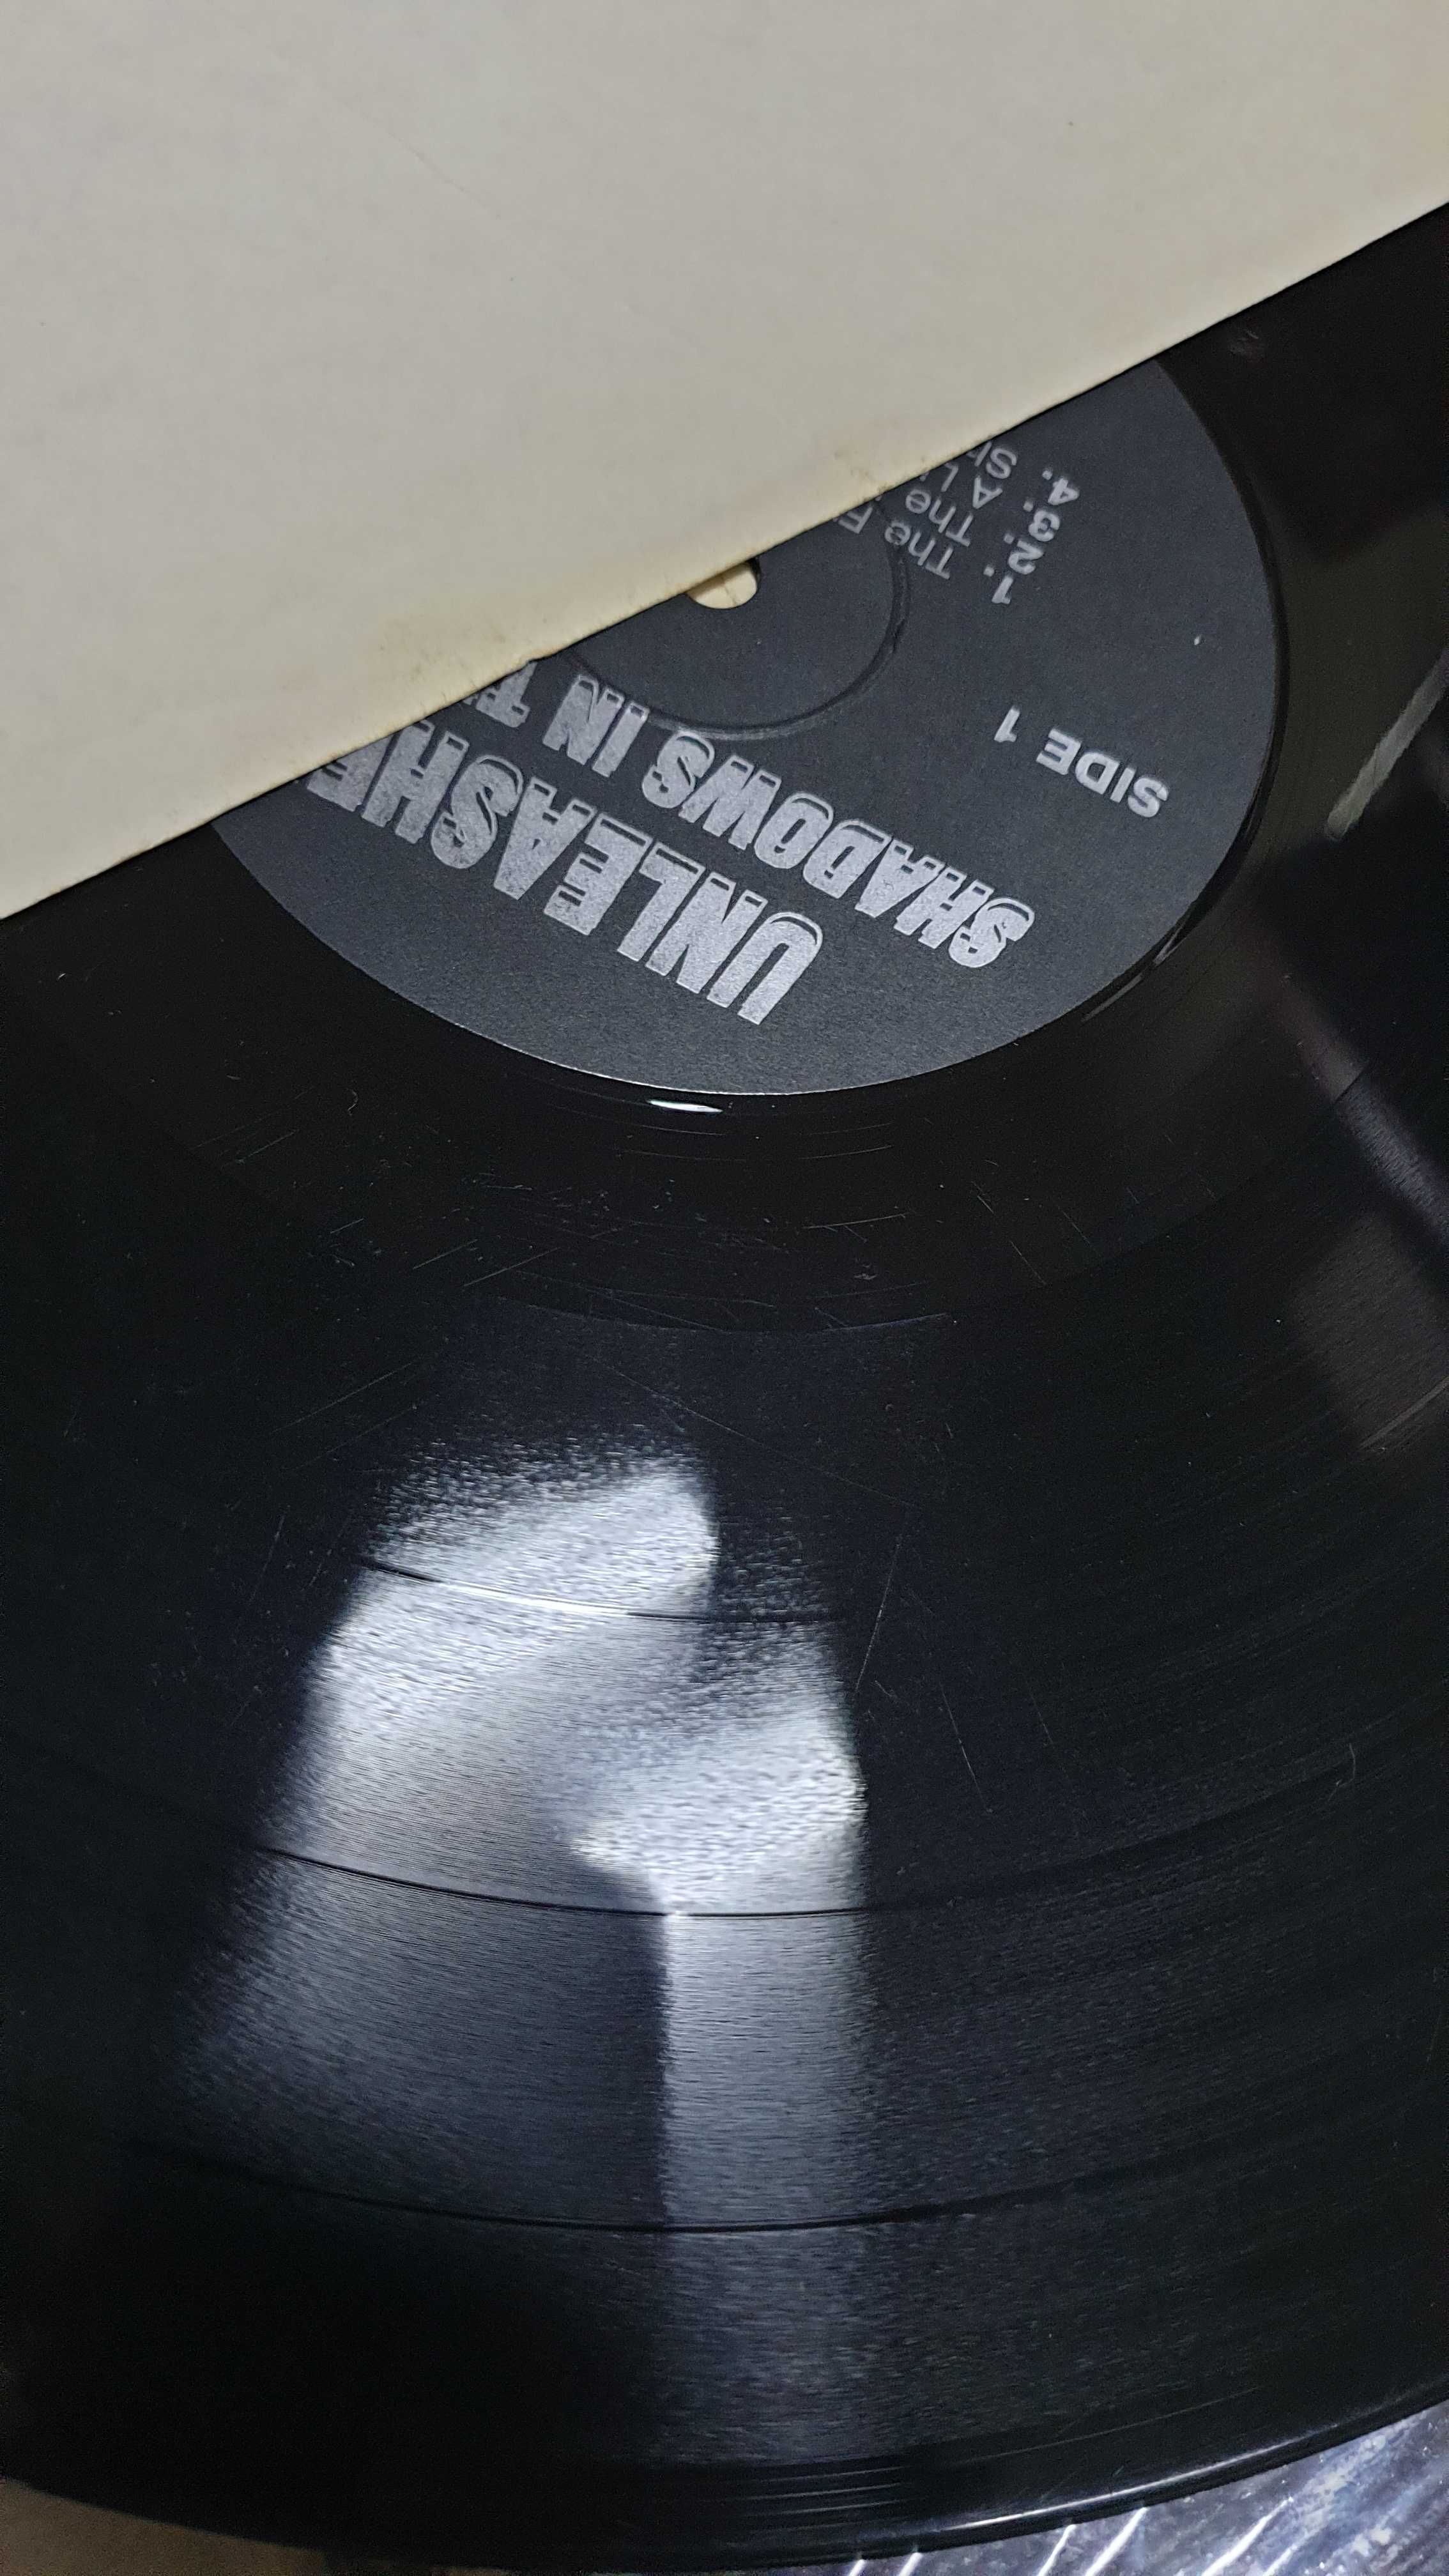 Винил / пластинка UNLEASHED "Shadows In The Deep" 12"LP